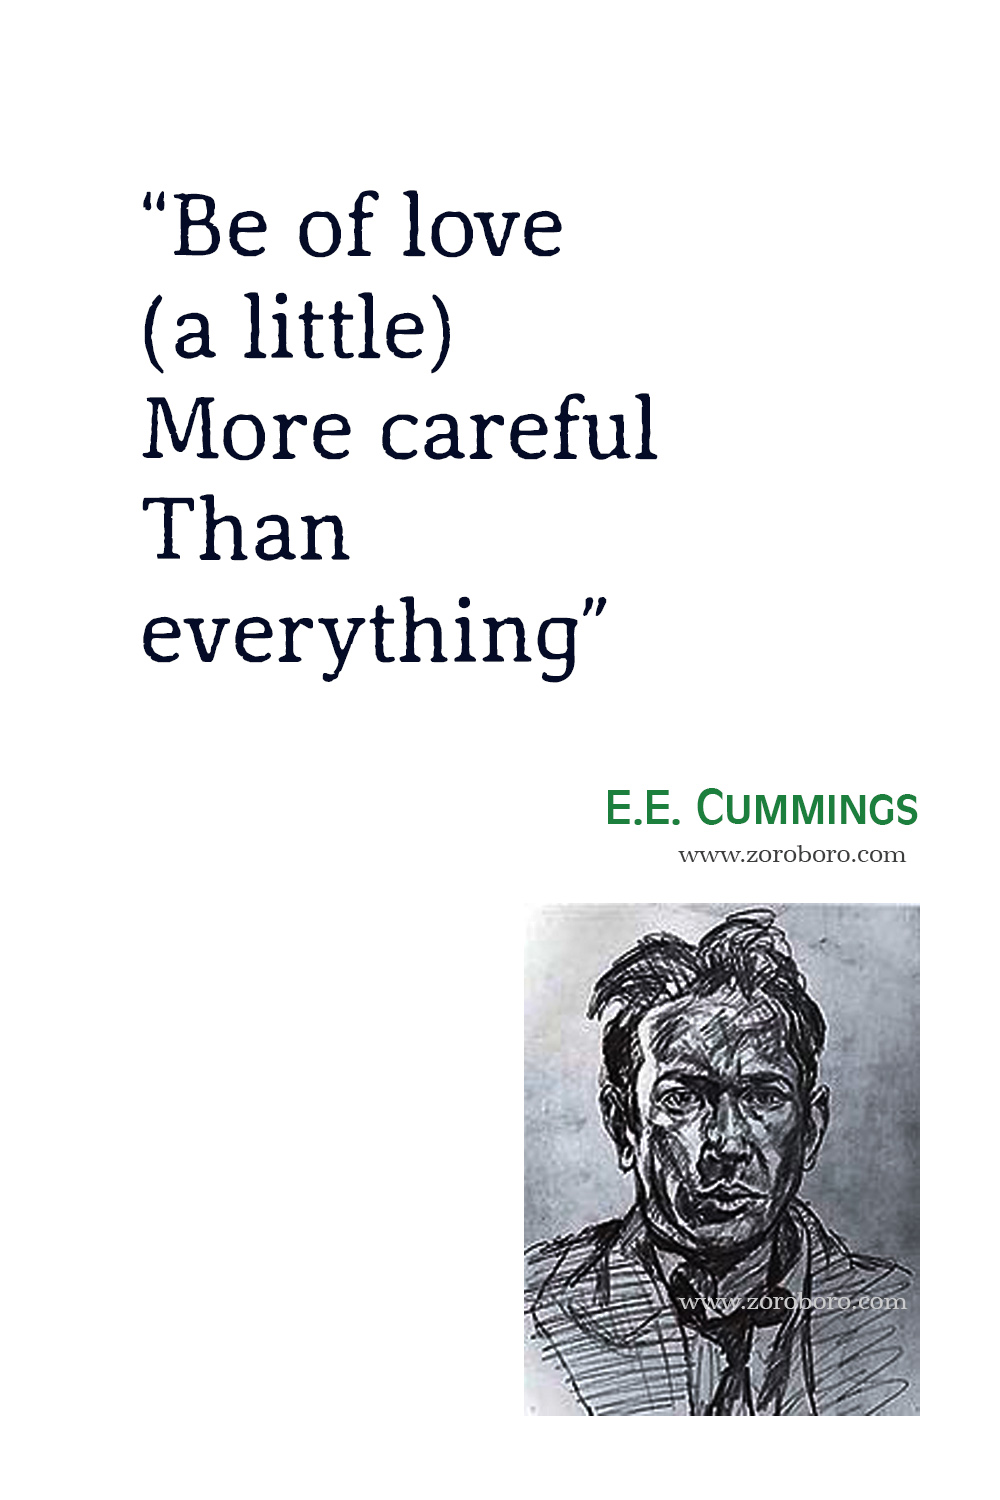 E. E. Cummings Quotes, E. E. Cummings Poems, E. E. Cummings Love Poems, E. E. Cummings Poetry, E. E. Cummings Books, E. E. Cummings.